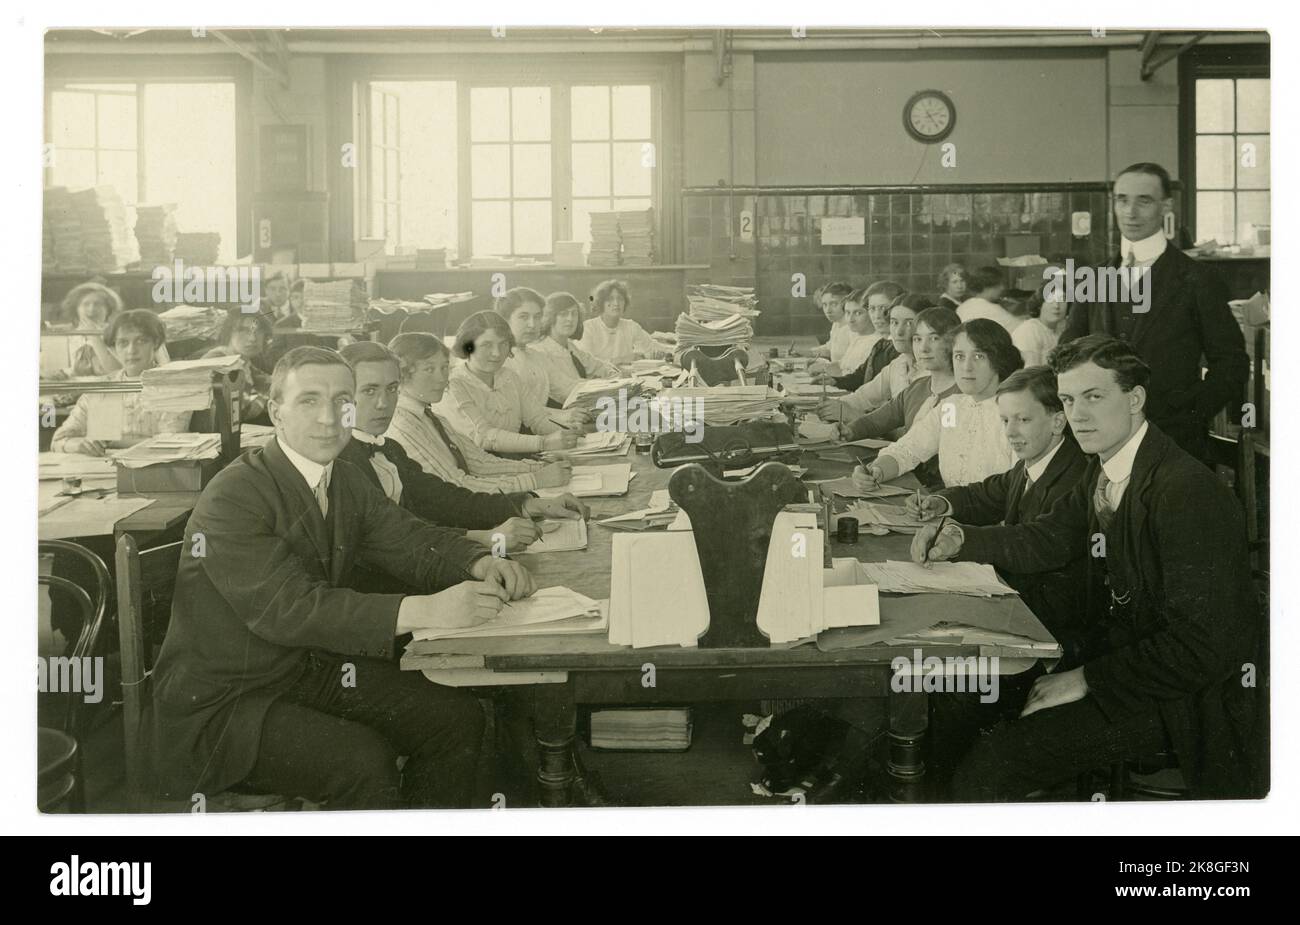 Originale primi del 1900, WW1 era cartolina di giovani impiegati, impiegati amministrativi, conti / amministrazione con personale sia maschile che femminile in un grande ufficio occupato e angusti, un sacco di documenti cartacei. Regno Unito circa 1913 Foto Stock